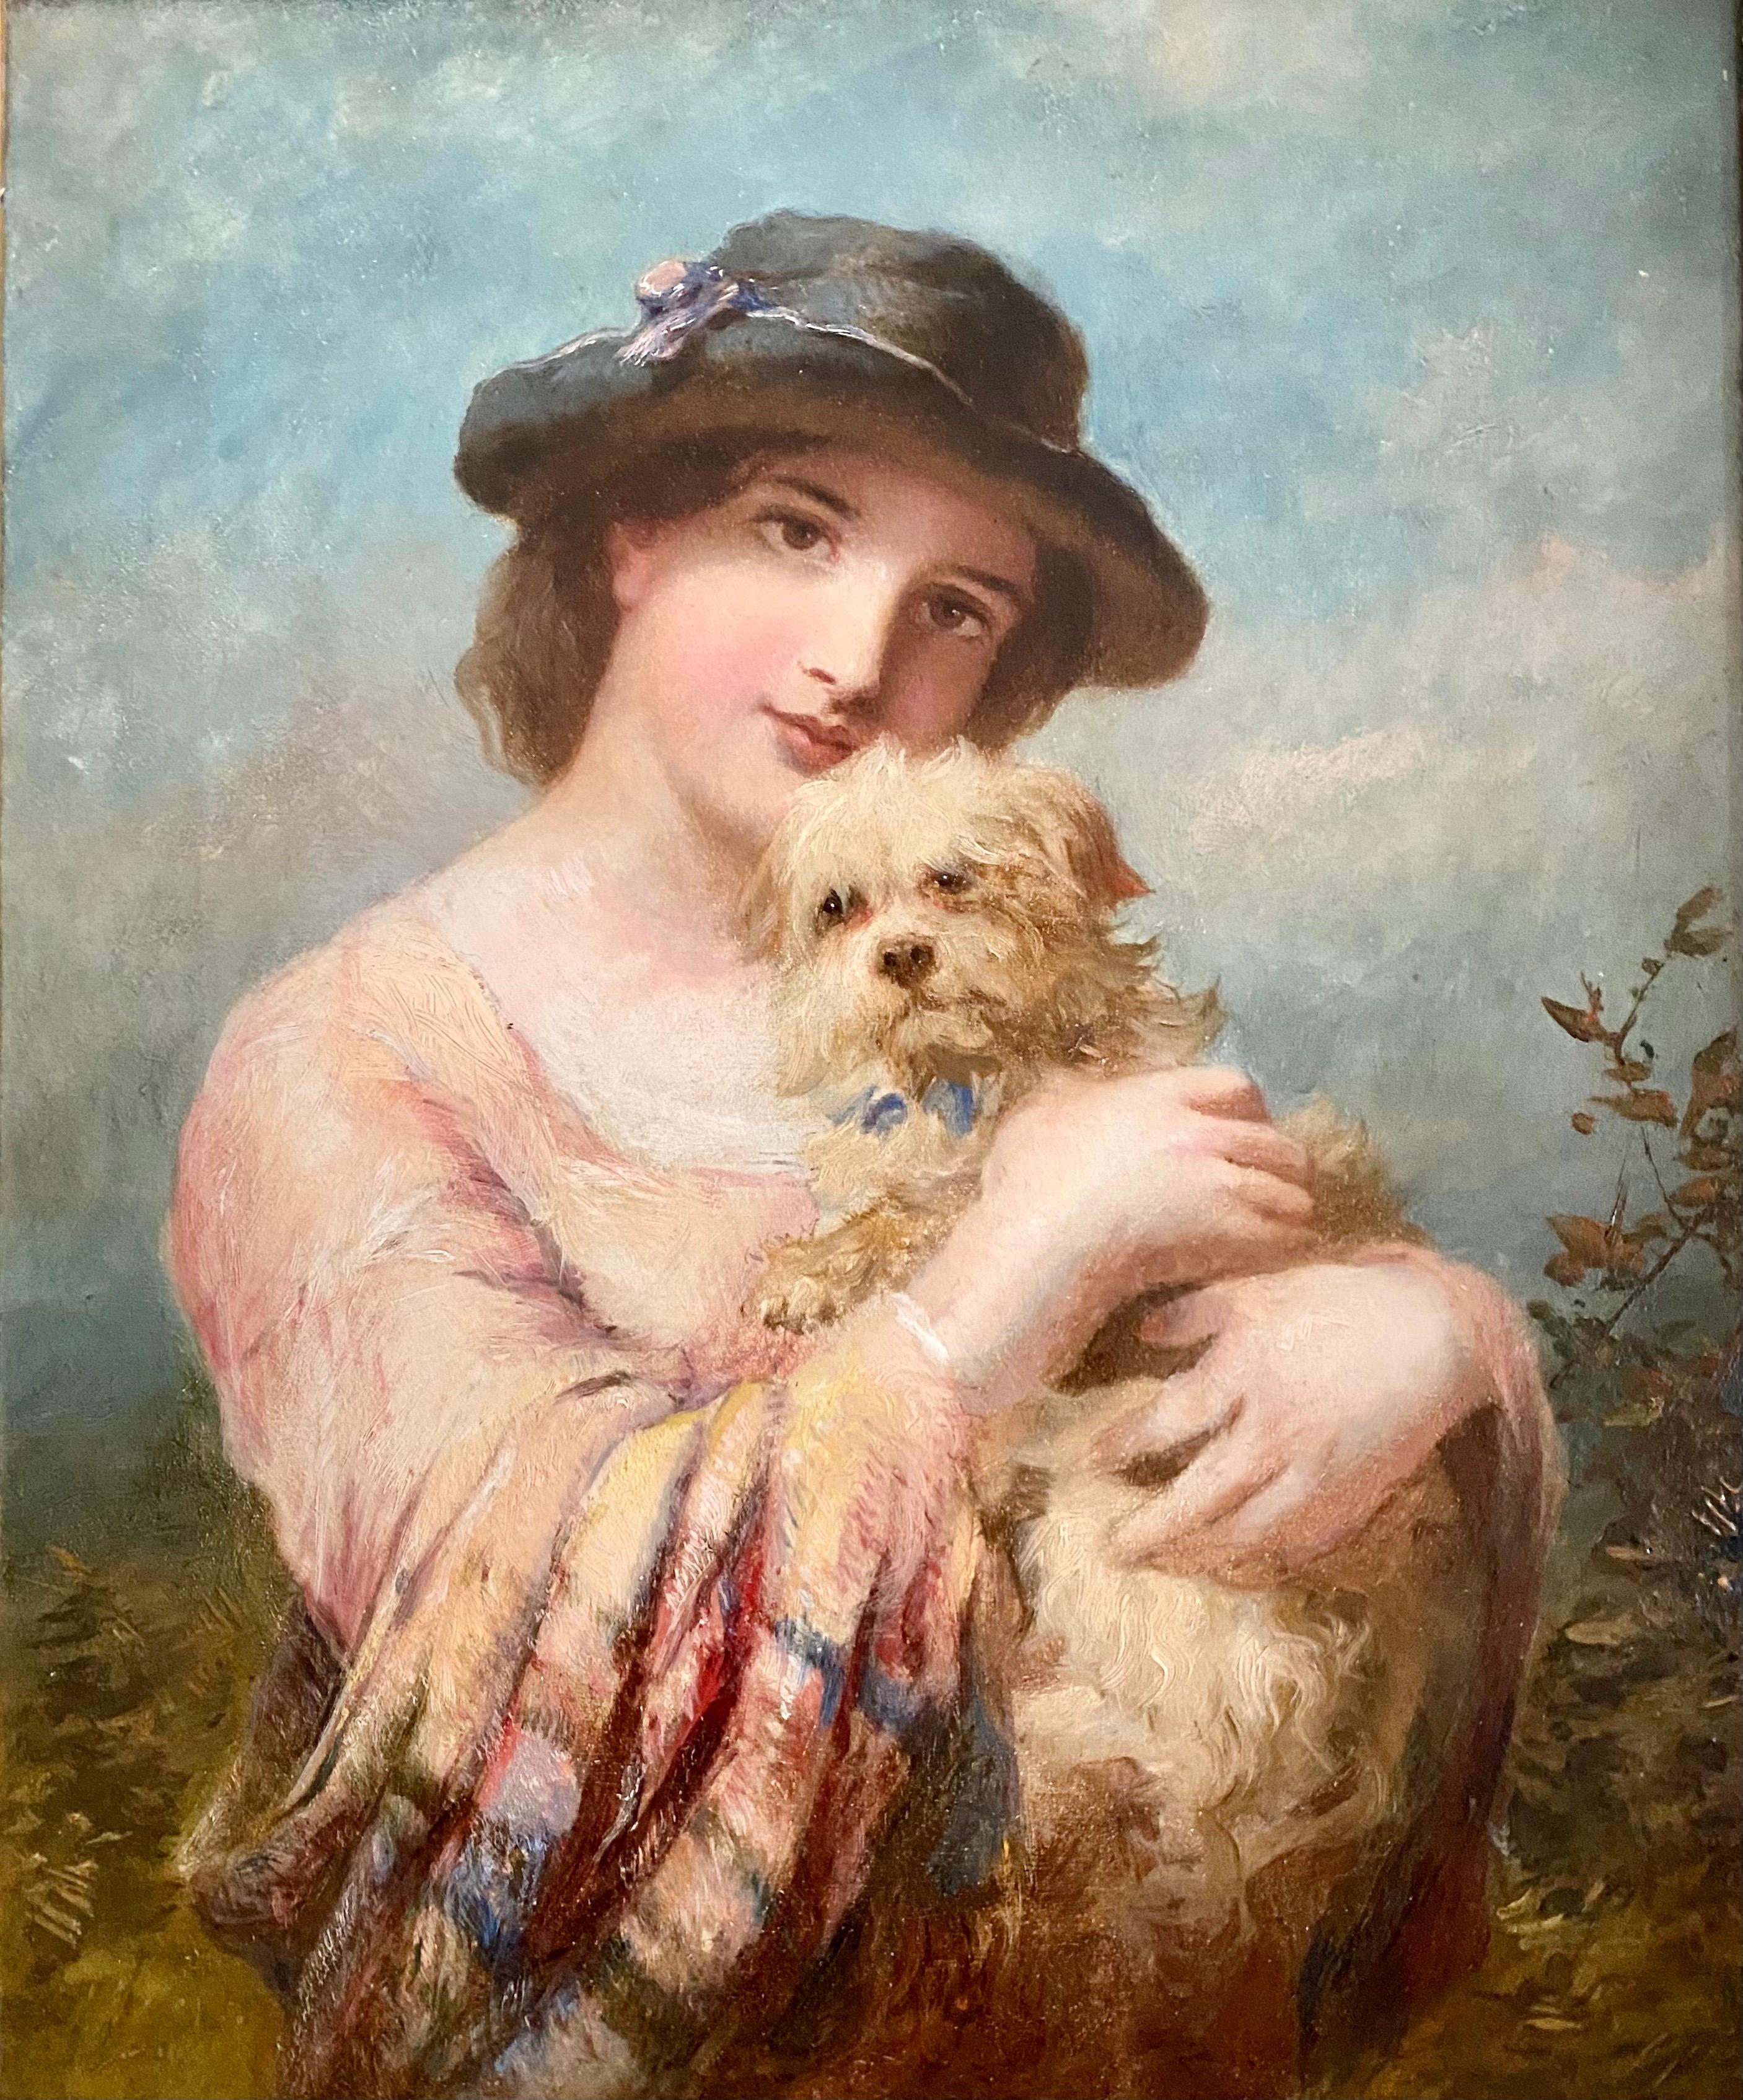 Une peinture de qualité superbe de James John Hill Rba (1811 - 1882). Cette magnifique peinture du 19ème siècle représente une belle dame avec son chien. La dame a l'air très élégante avec son chapeau et son animal de compagnie. La qualité de cette